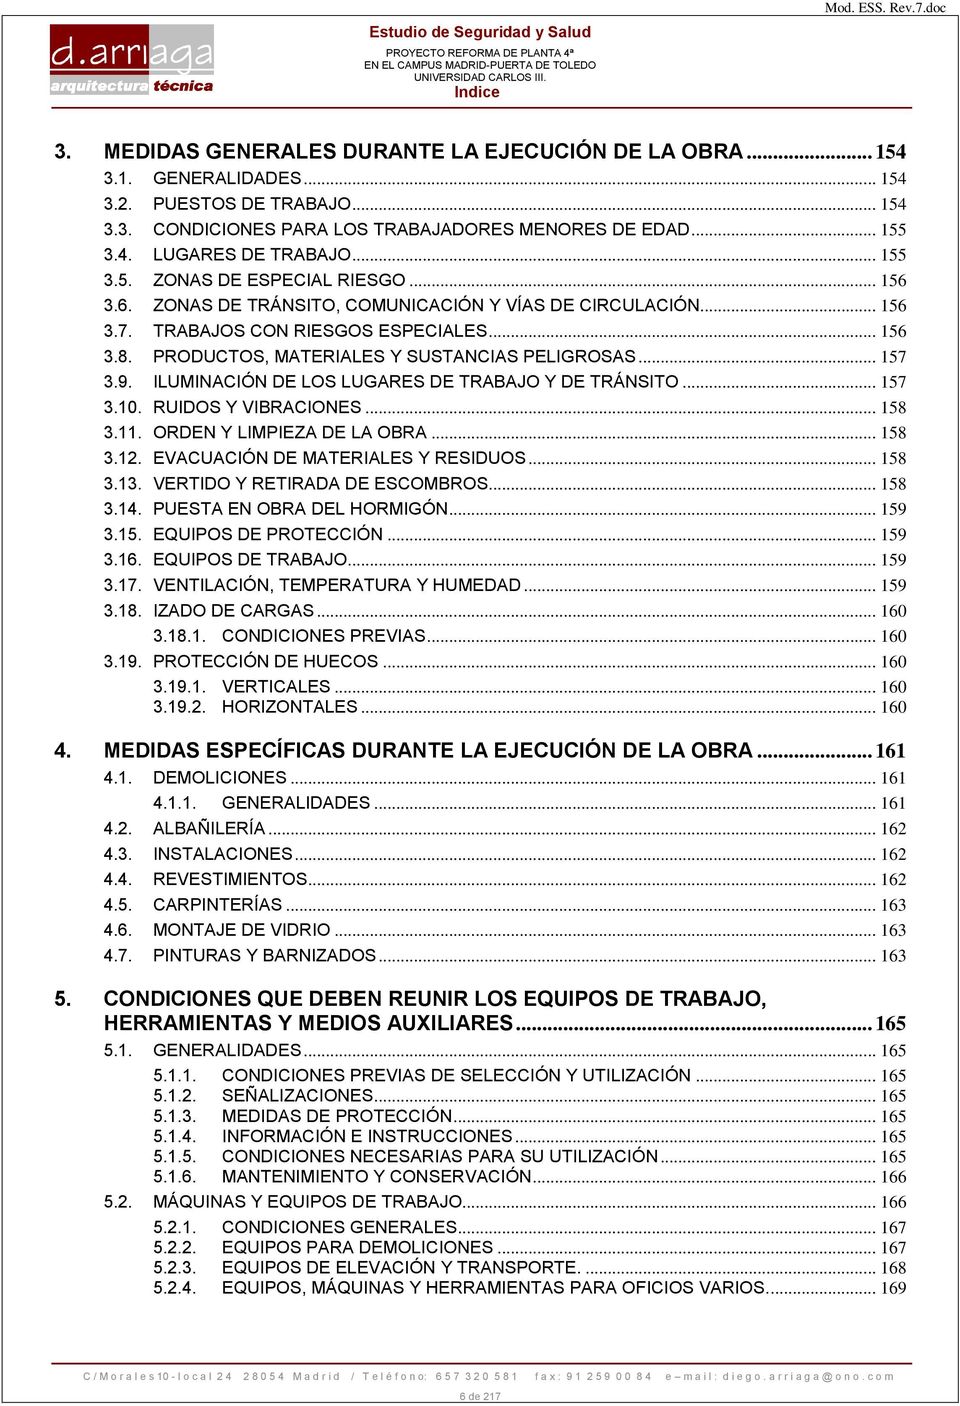 PRODUCTOS, MATERIALES Y SUSTANCIAS PELIGROSAS... 157 3.9. ILUMINACIÓN DE LOS LUGARES DE TRABAJO Y DE TRÁNSITO... 157 3.10. RUIDOS Y VIBRACIONES... 158 3.11. ORDEN Y LIMPIEZA DE LA OBRA... 158 3.12.